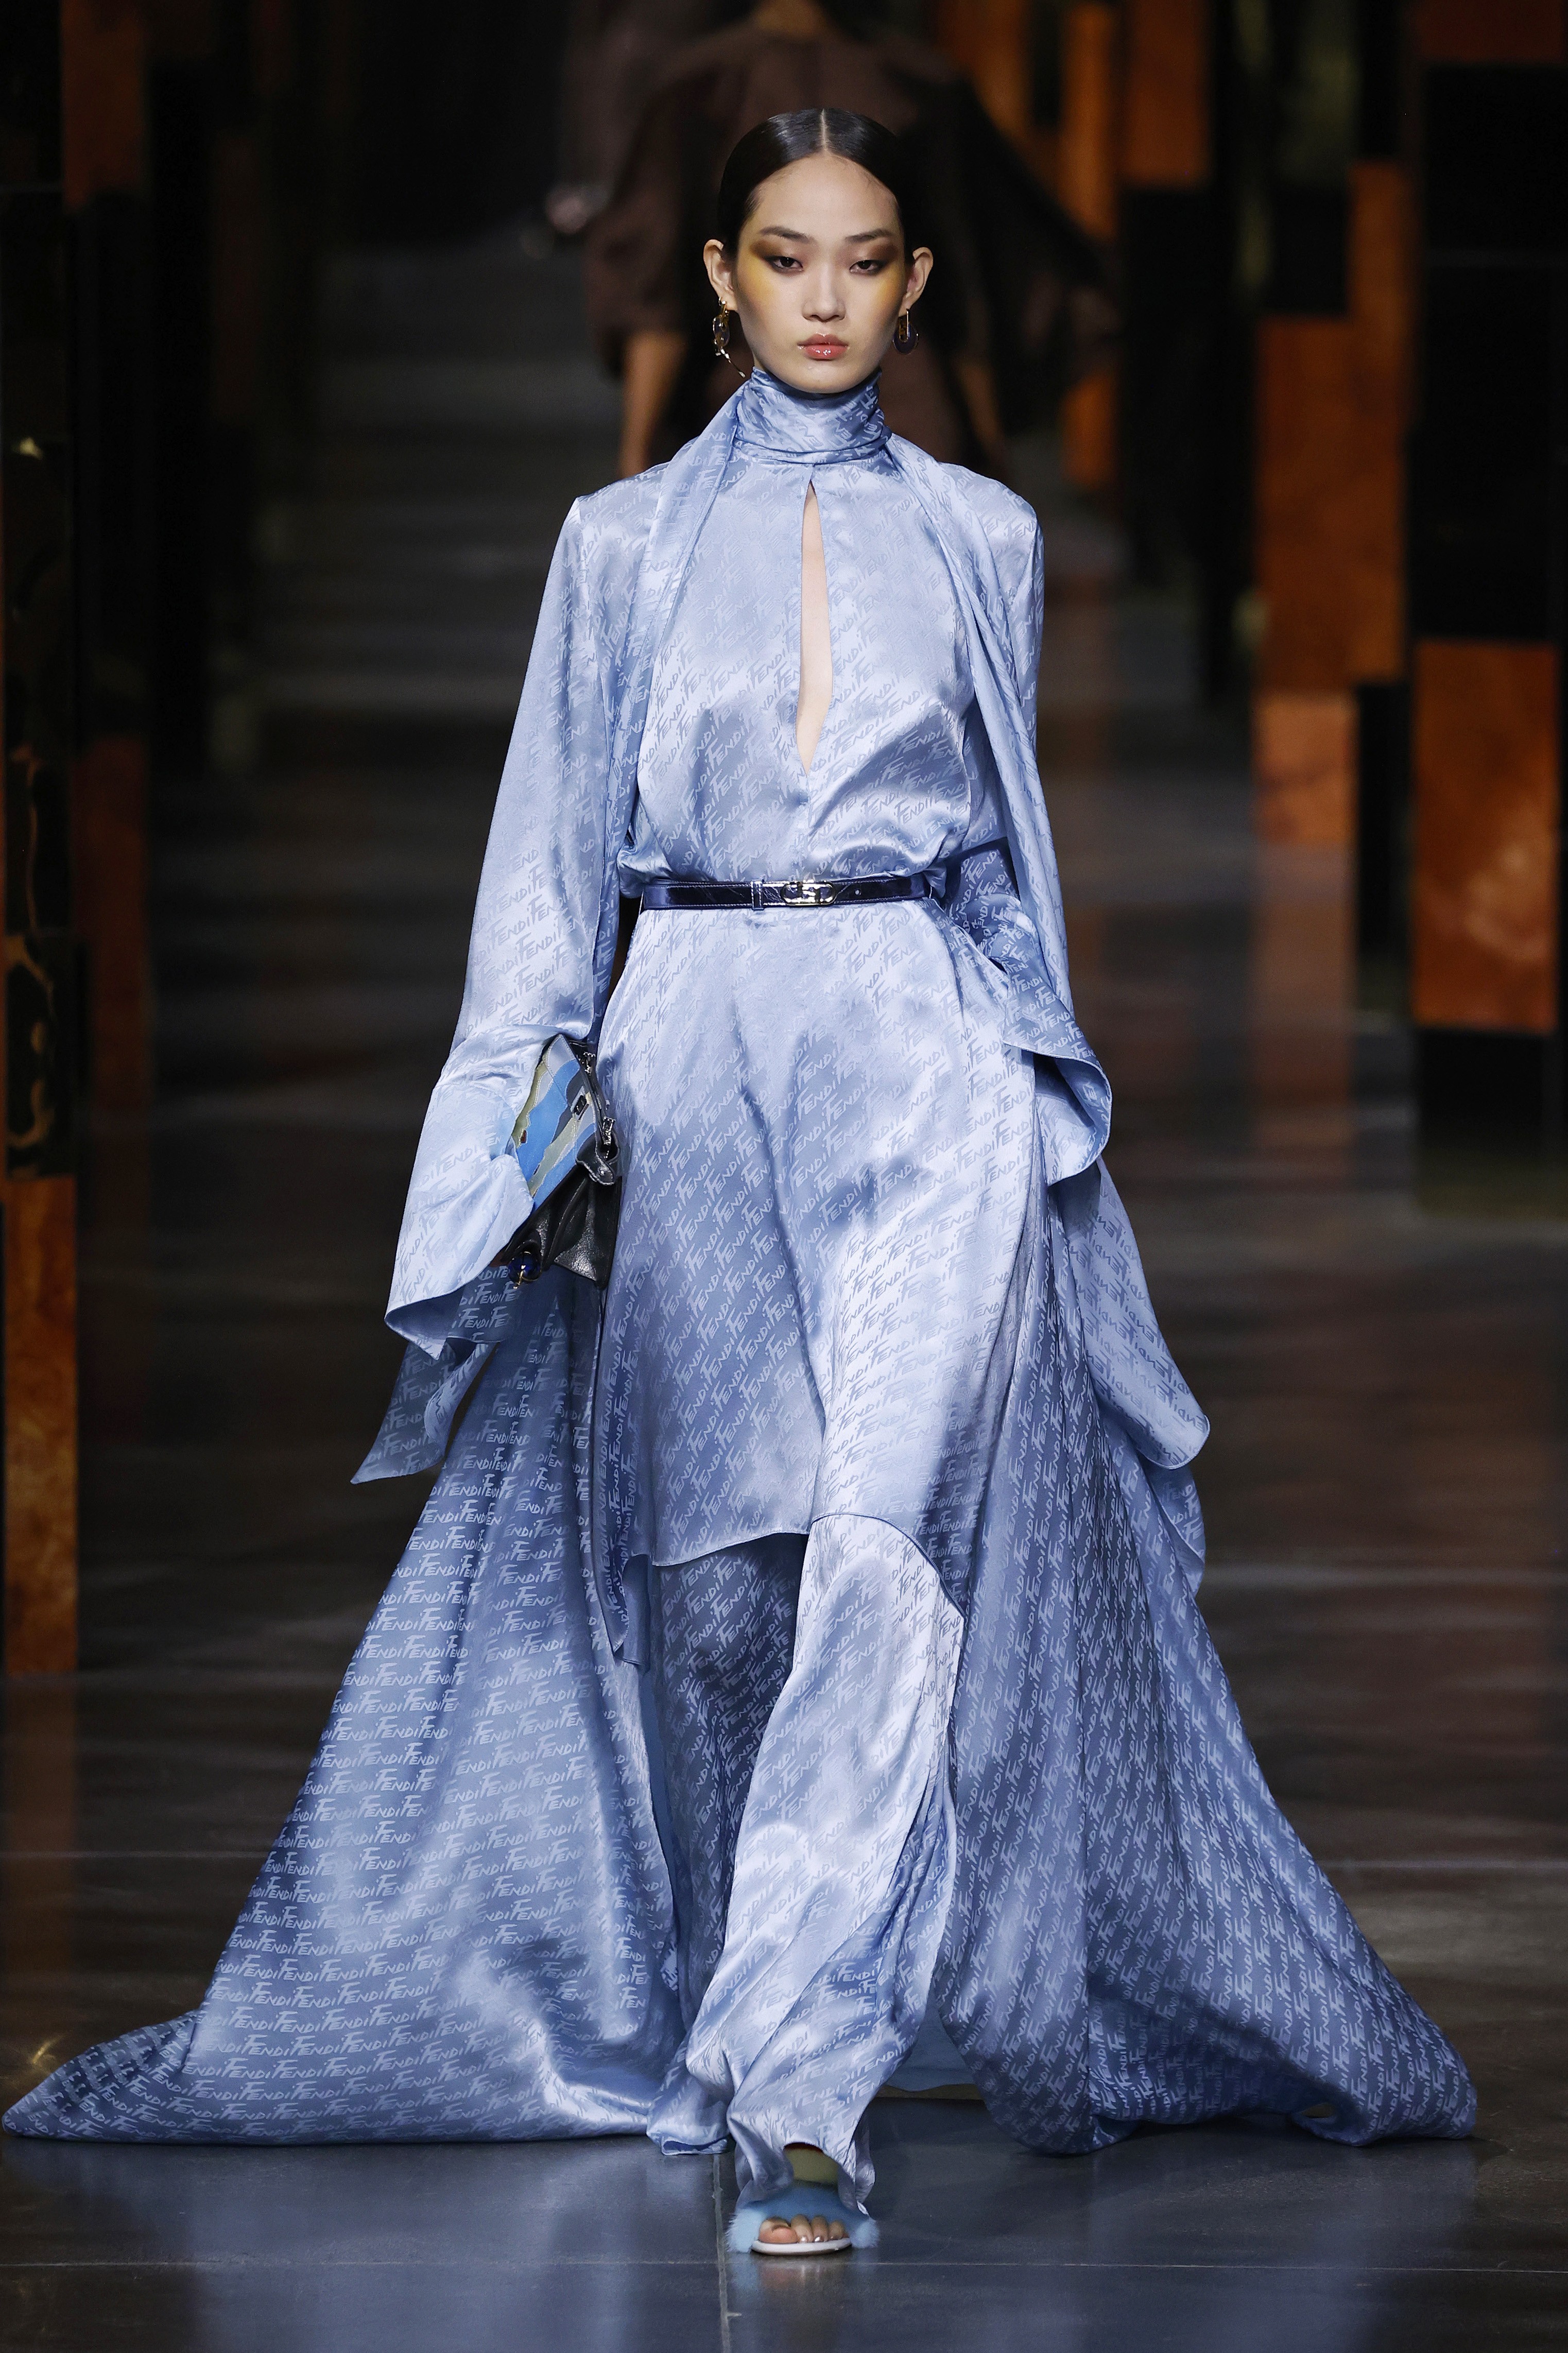 Semana de moda de Milão SS 22: Fendi (Foto: Getty Images)